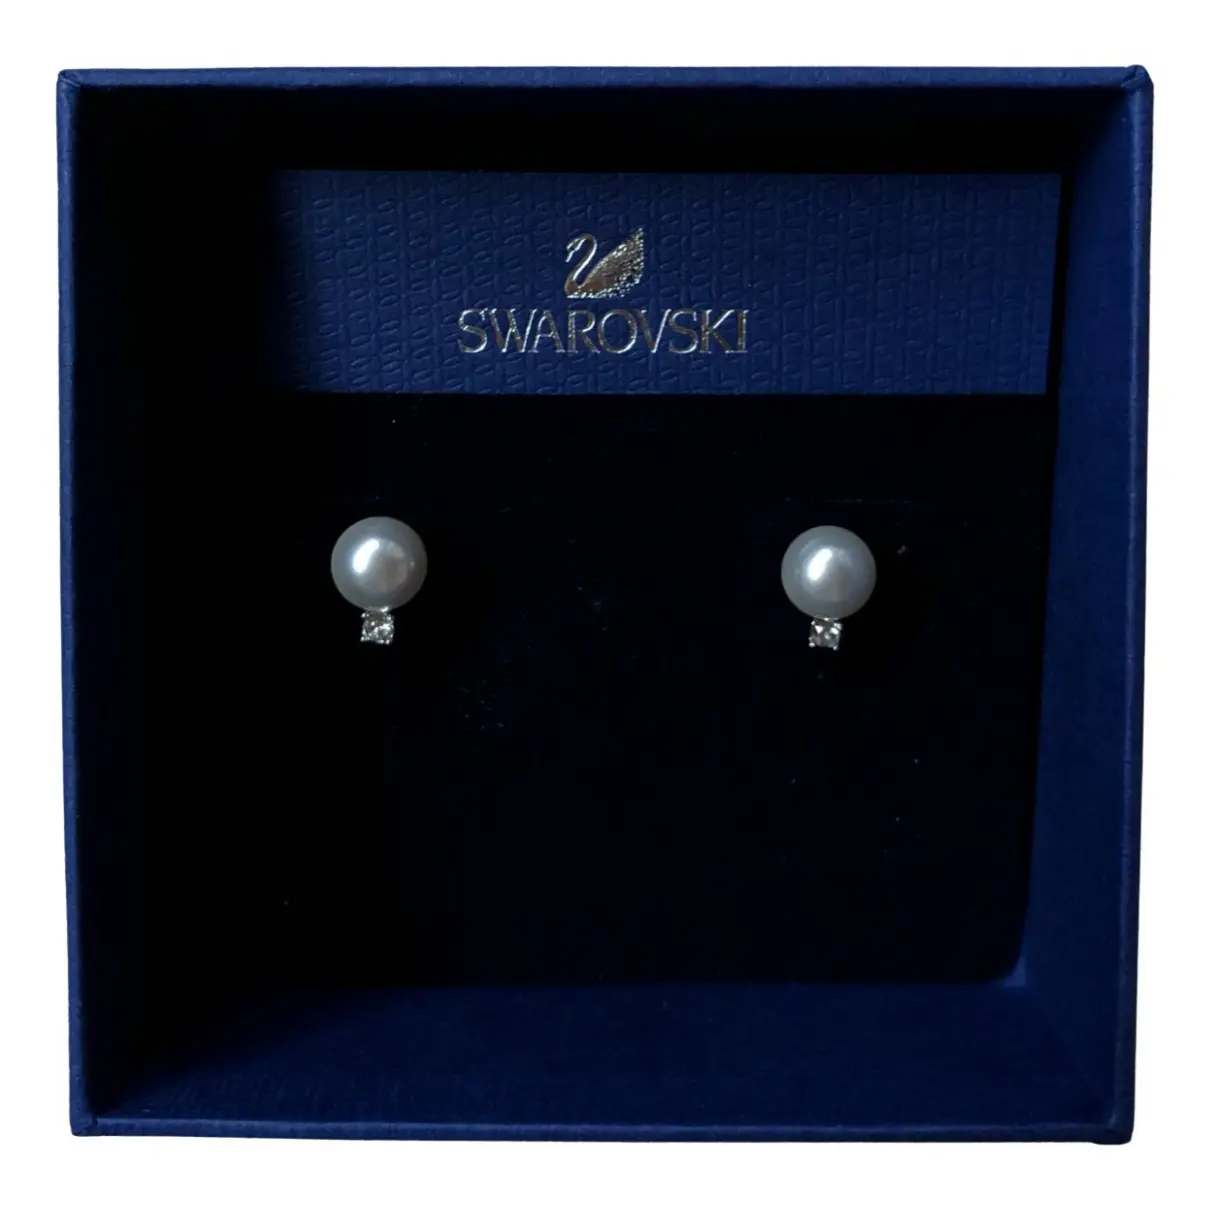 Buy Swarovski Pearls earrings online